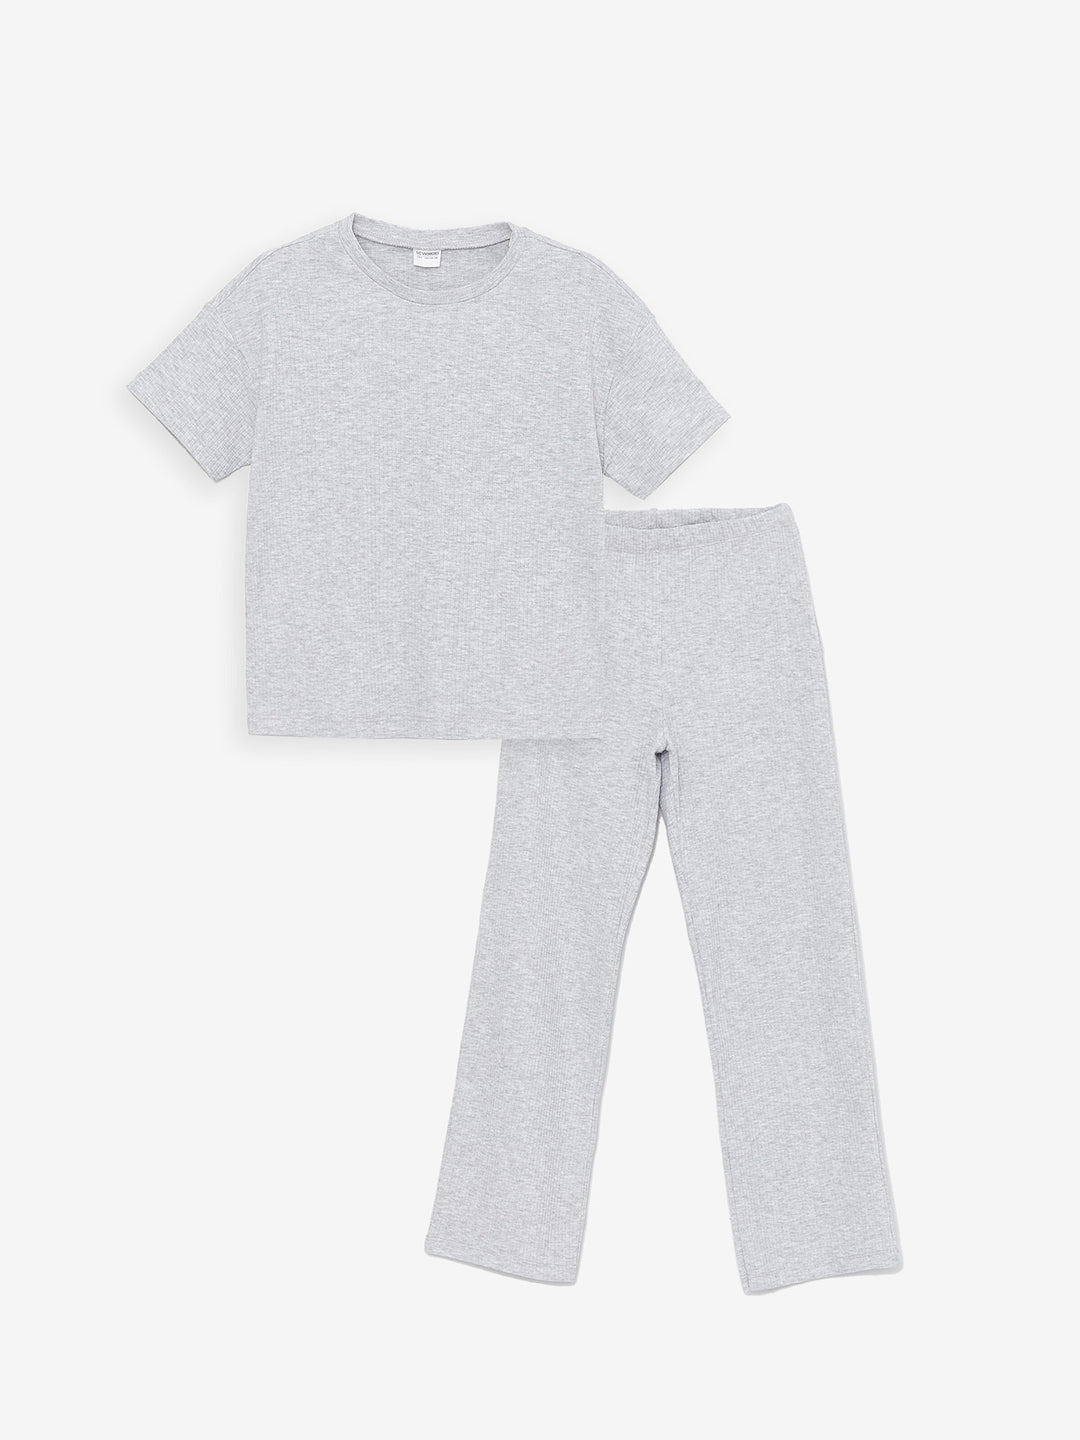 Crew Neck Short Sleeve Girls Pajama Set